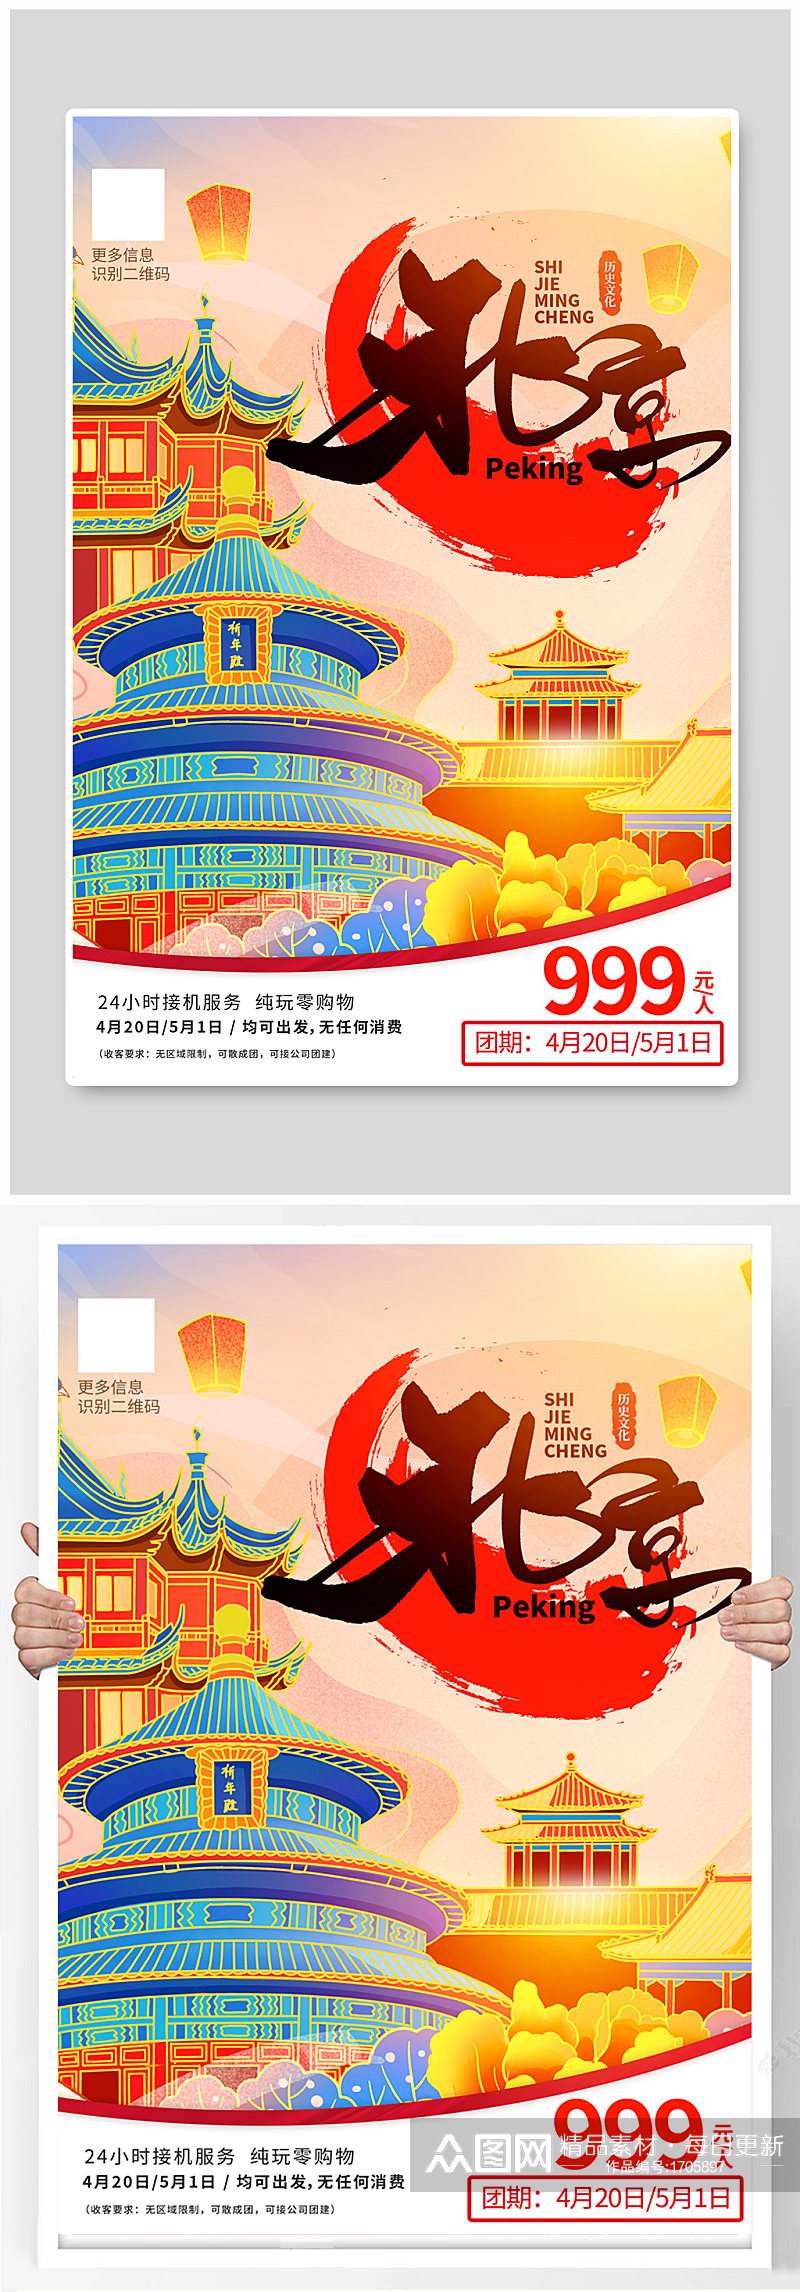 国潮风五一畅游北京旅游宣传海报素材